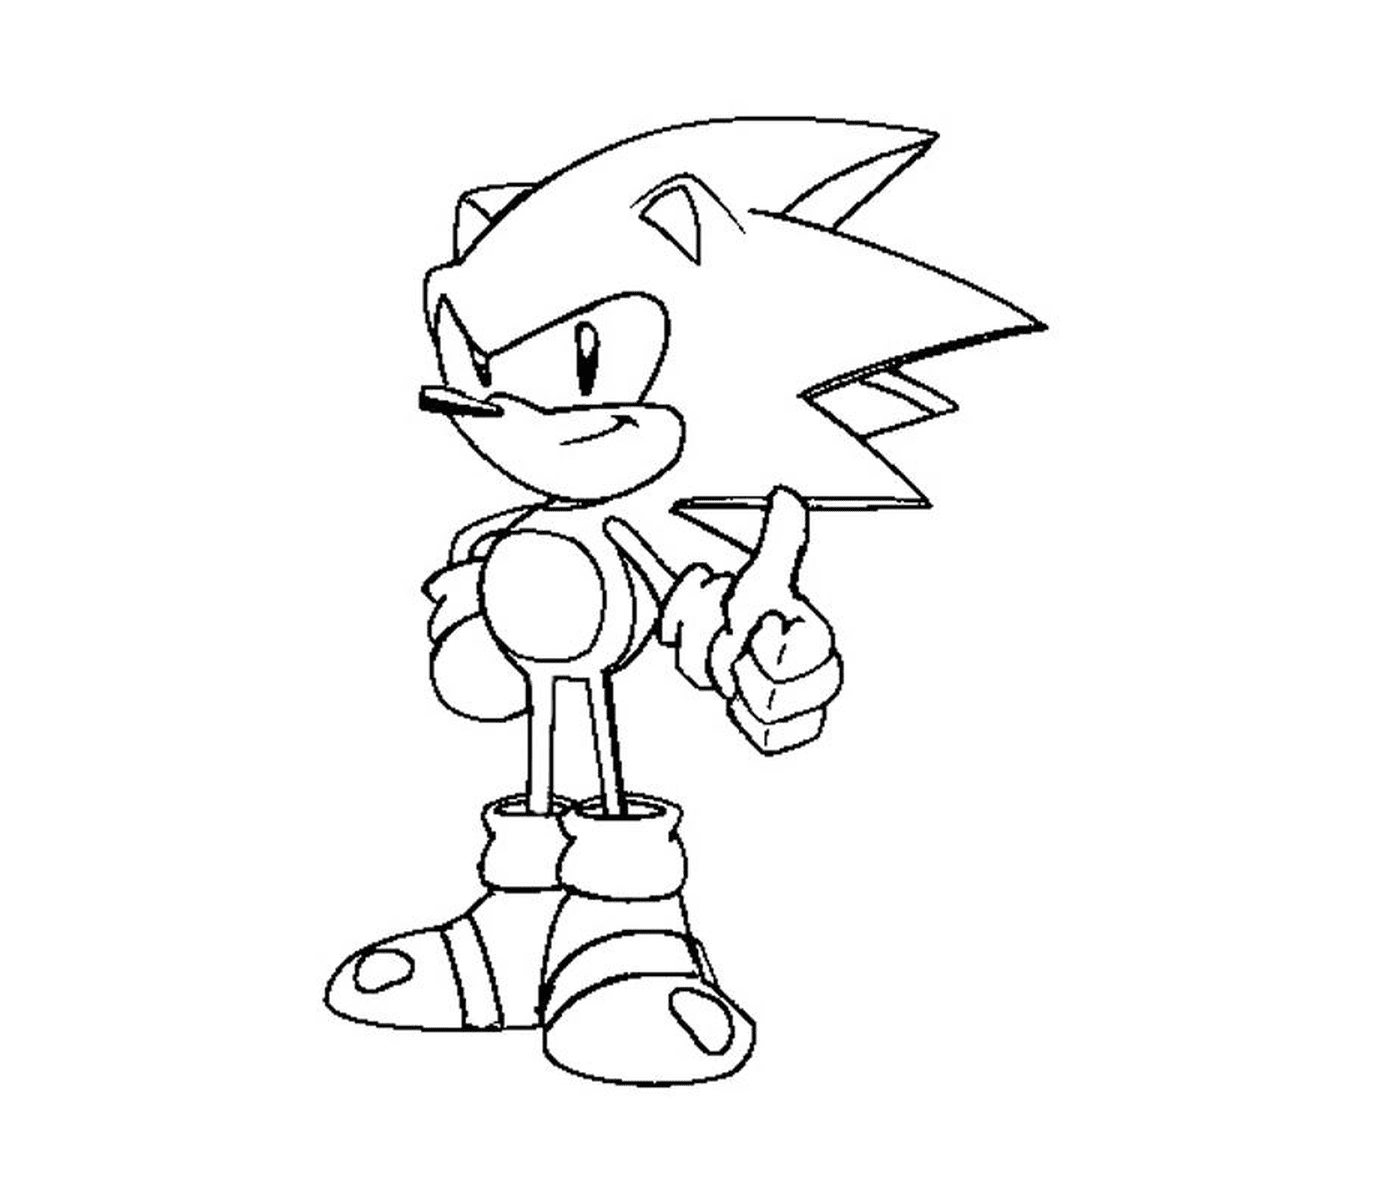  Super Sonic full of power 